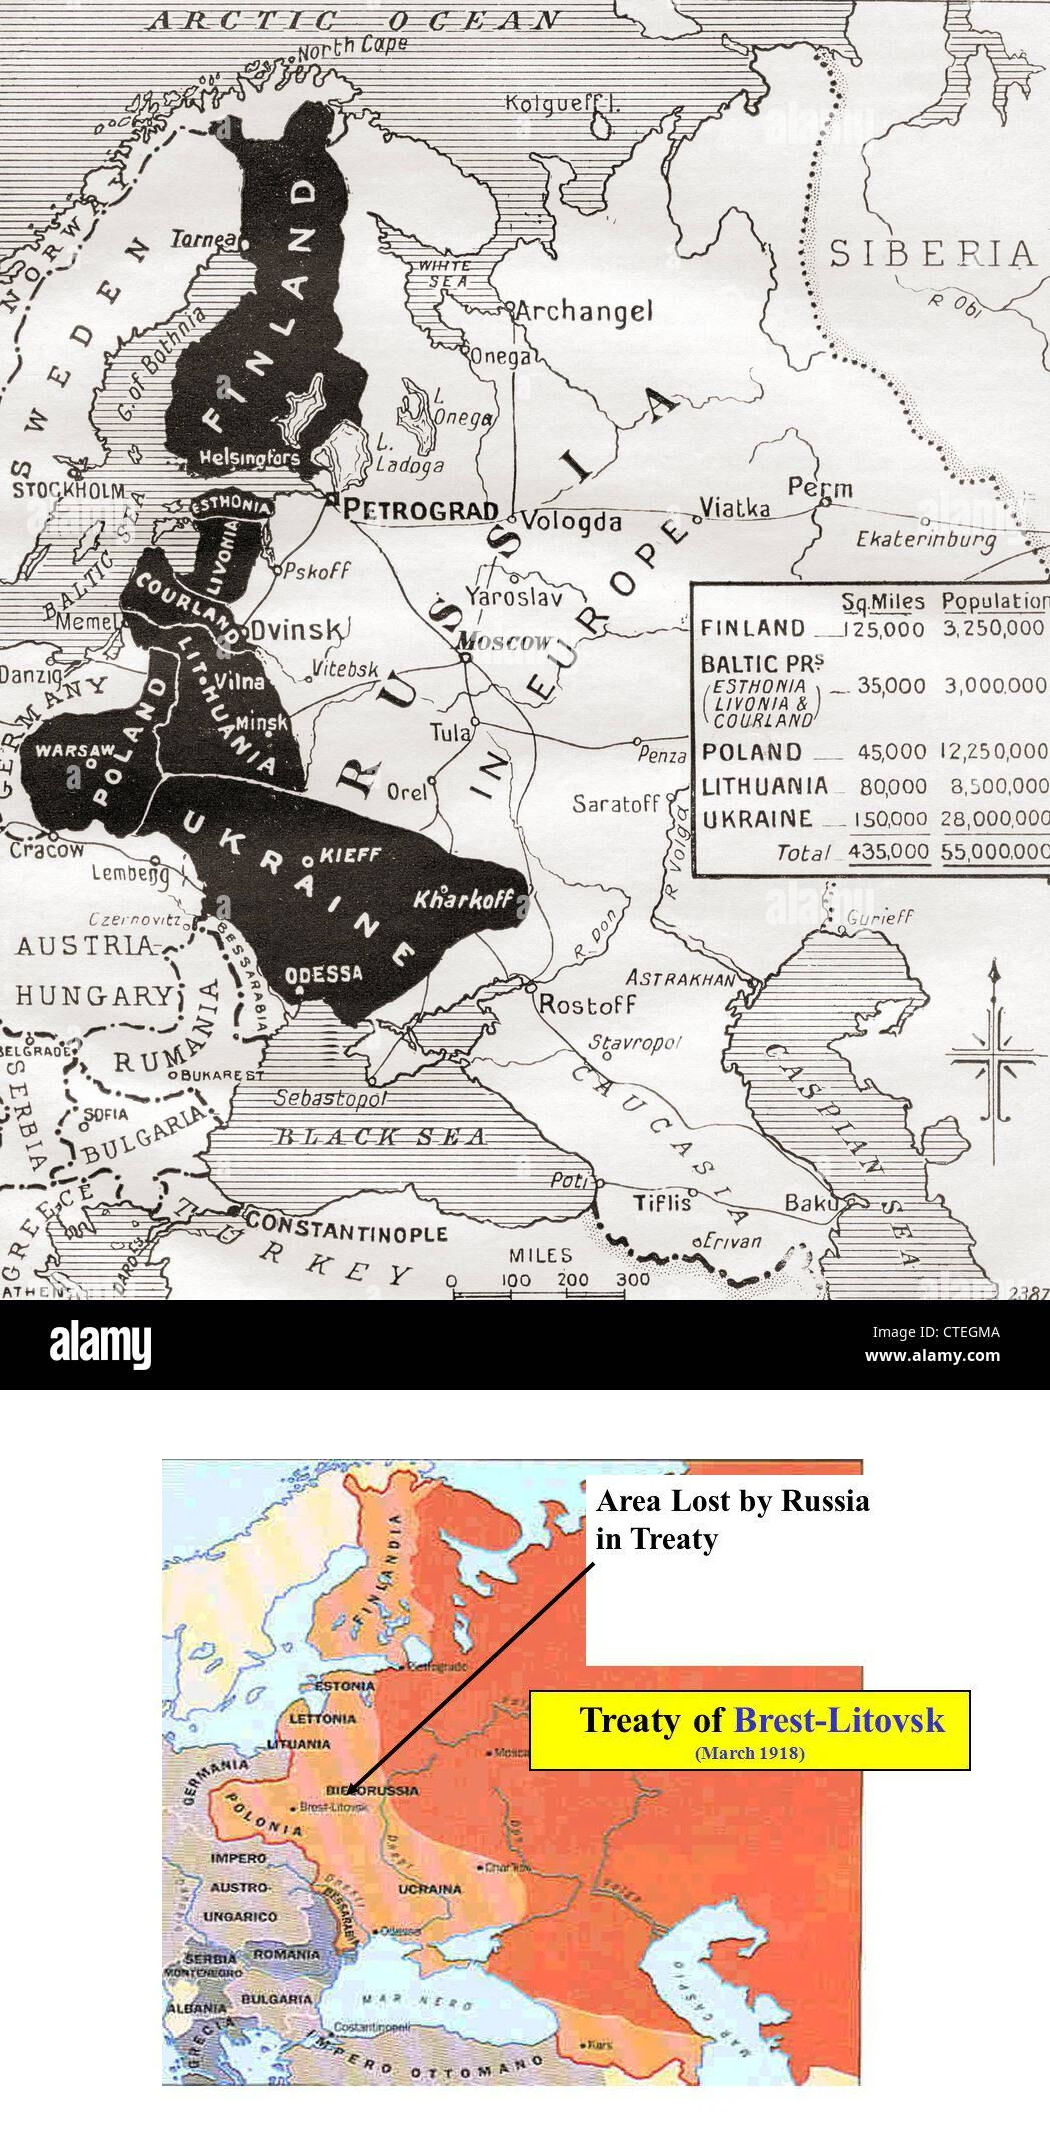 Granice powojennej Europy Wschodniej w wyniku podpisanego traktatu brzeskiego w 1918 roku (3 marca)